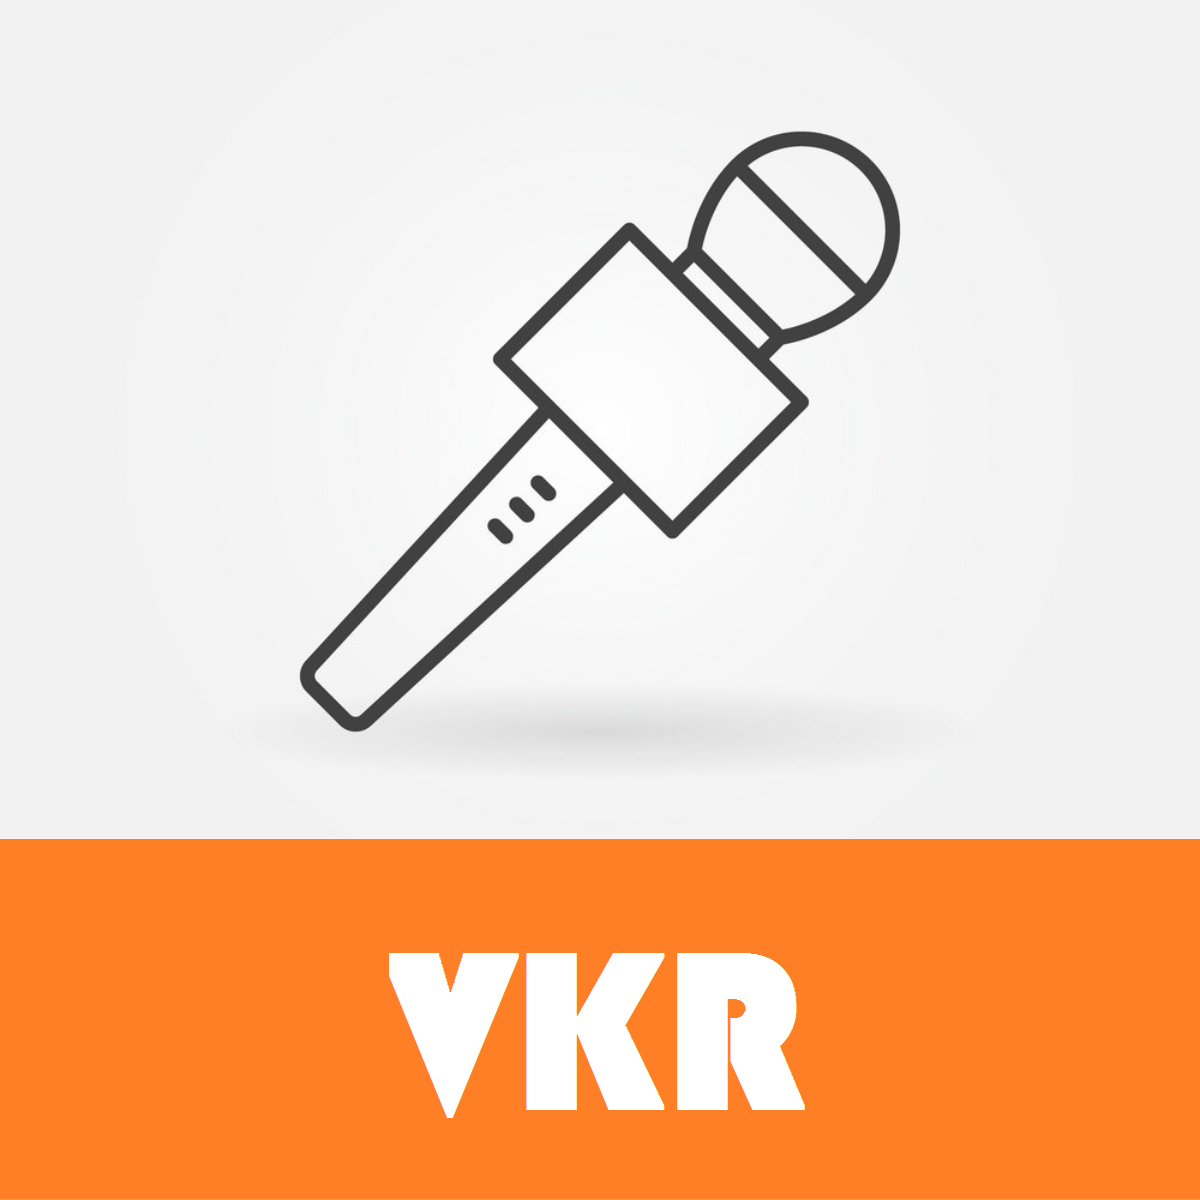 VKR News là trang tin tức K-pop được giới trẻ Việt yêu thích.